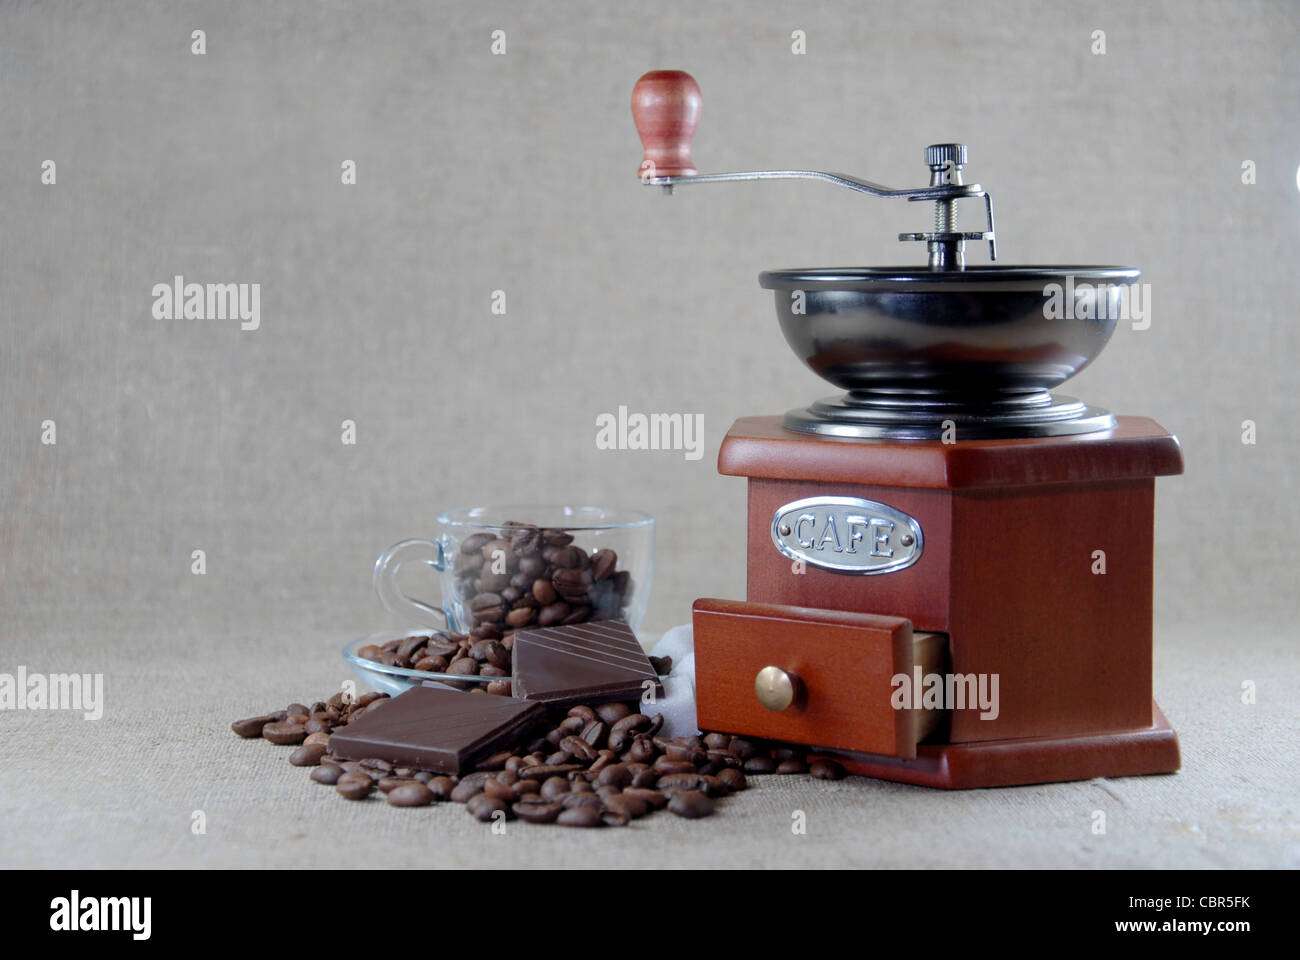 Molinillo de madera de café y frijoles y vaso Foto de stock